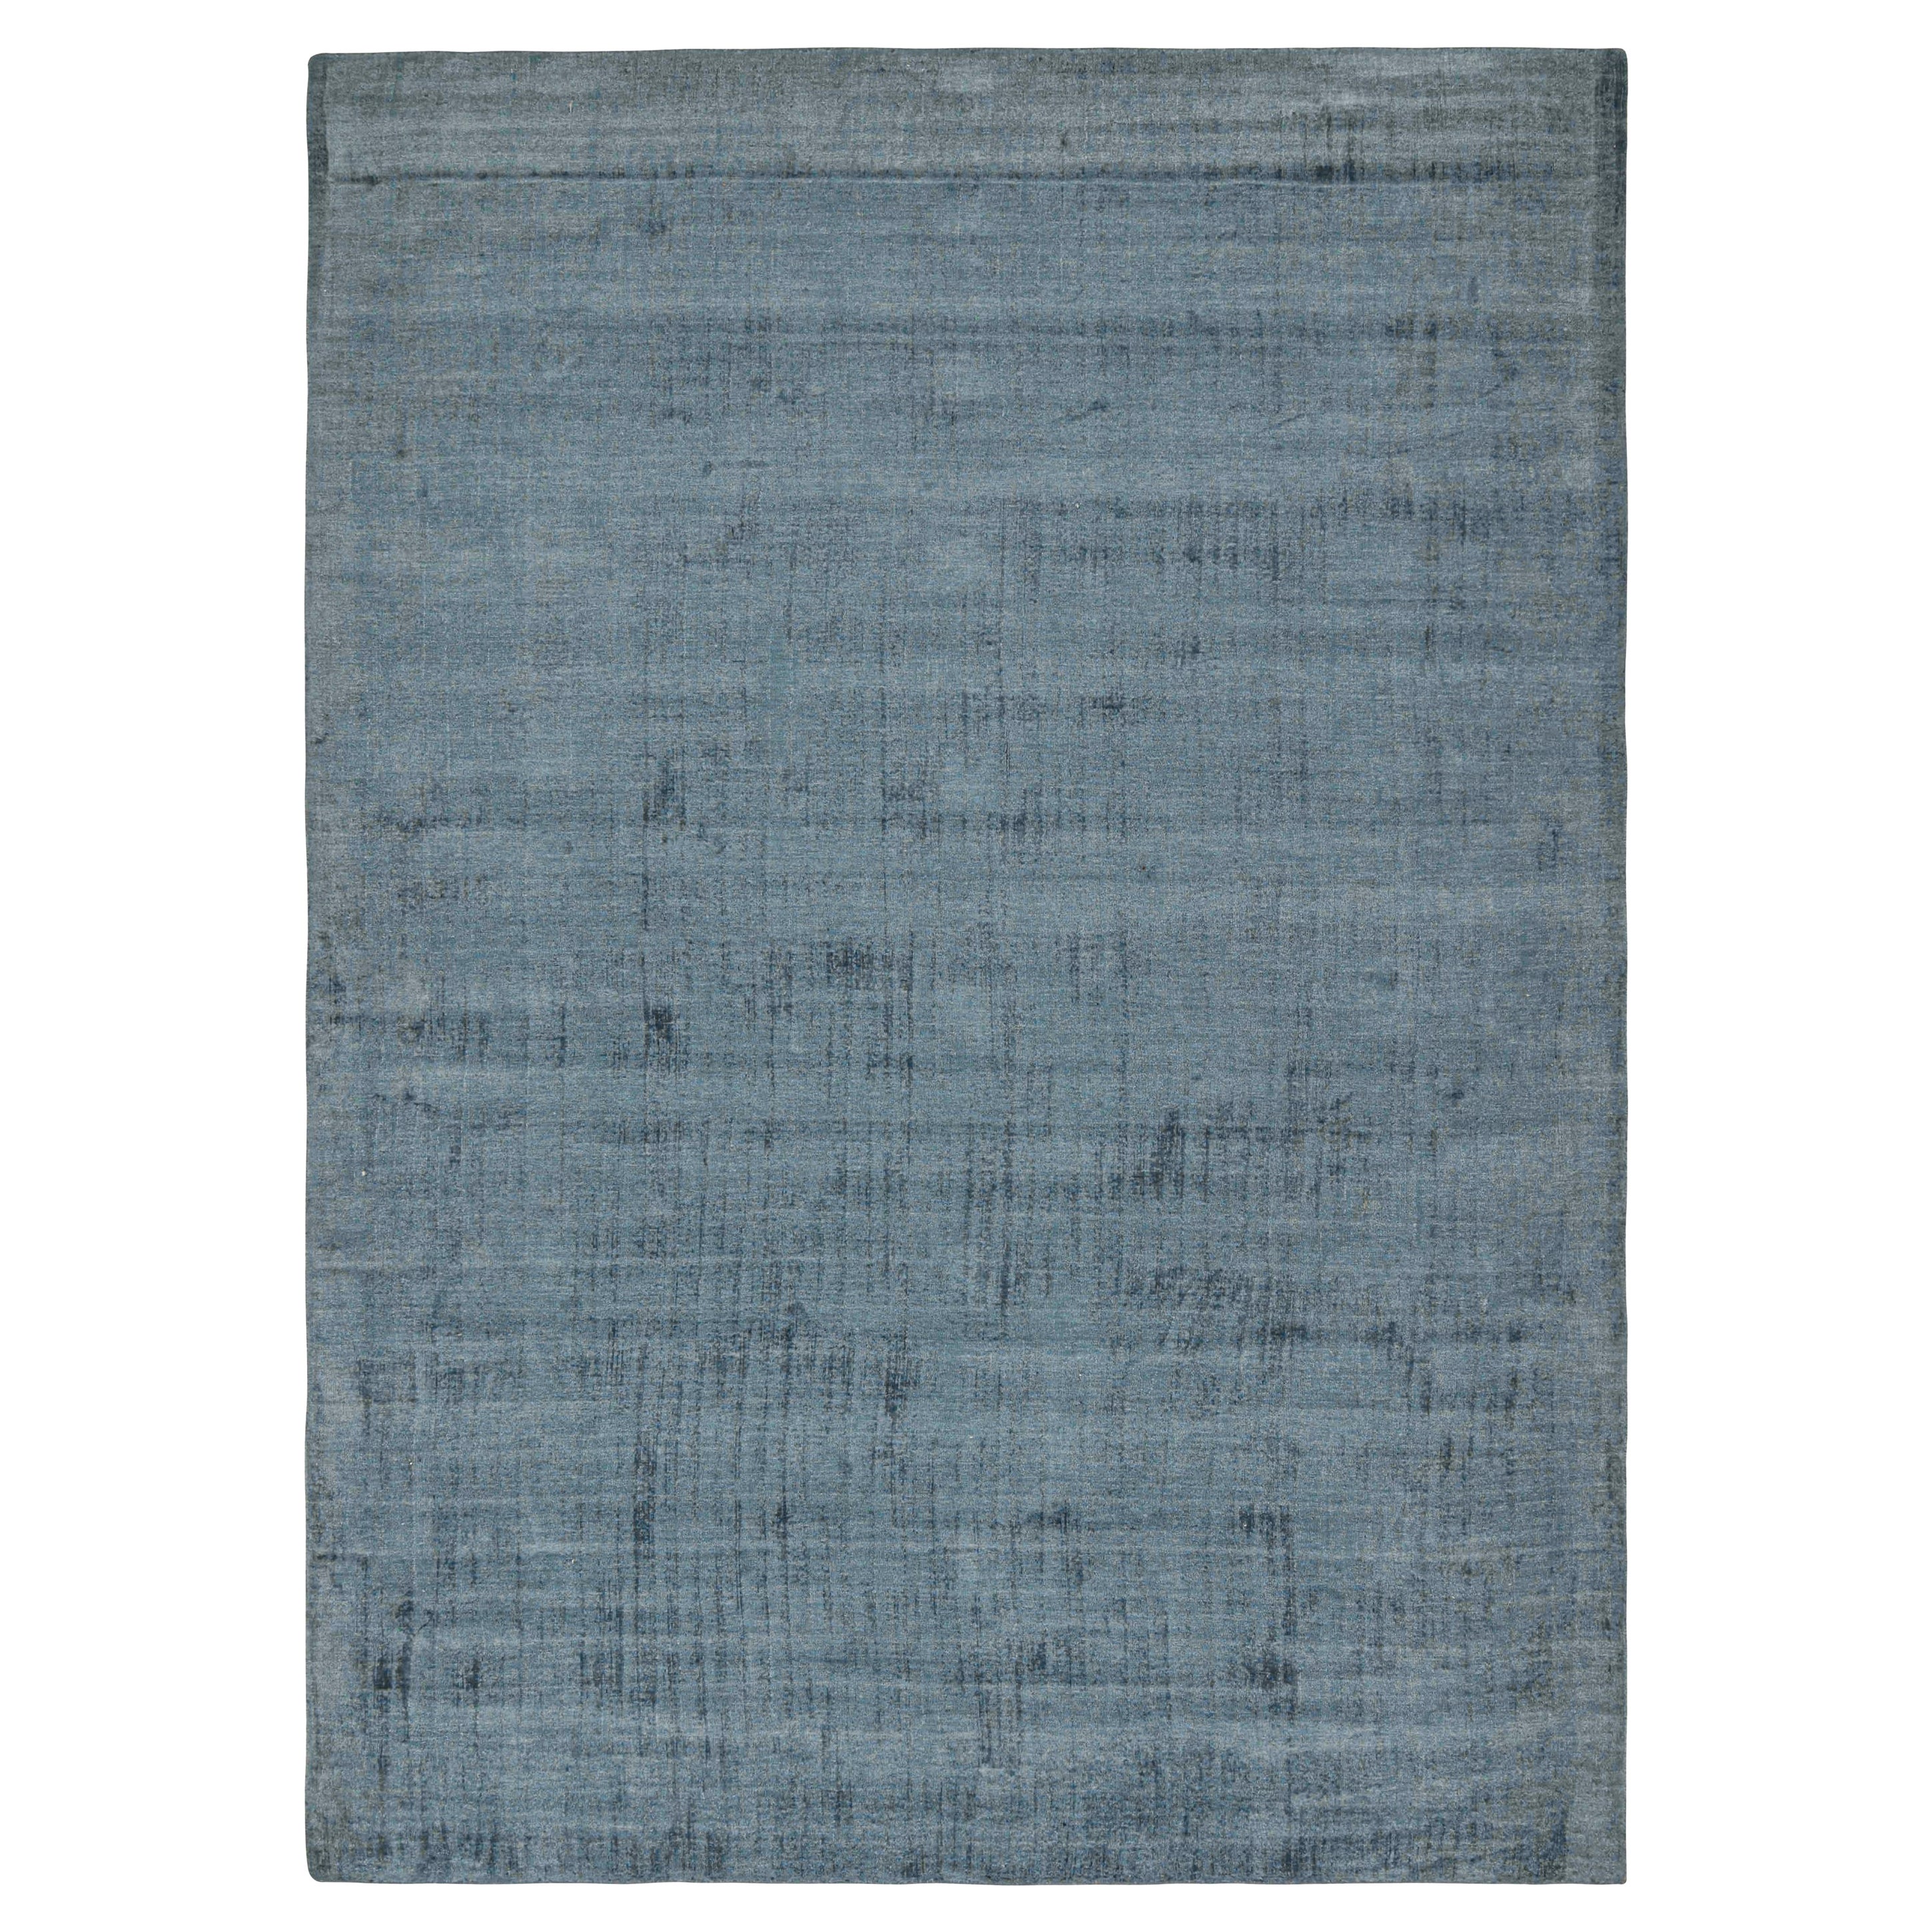 Ce tapis 10x14 est une nouvelle entrée grandiose dans la Collection Texture of Color de Rug & Kilim. 

Les connaisseurs noteront que cette pièce est issue de notre nouvelle ligne Light on Loom, qui offre des possibilités de personnalisation plus